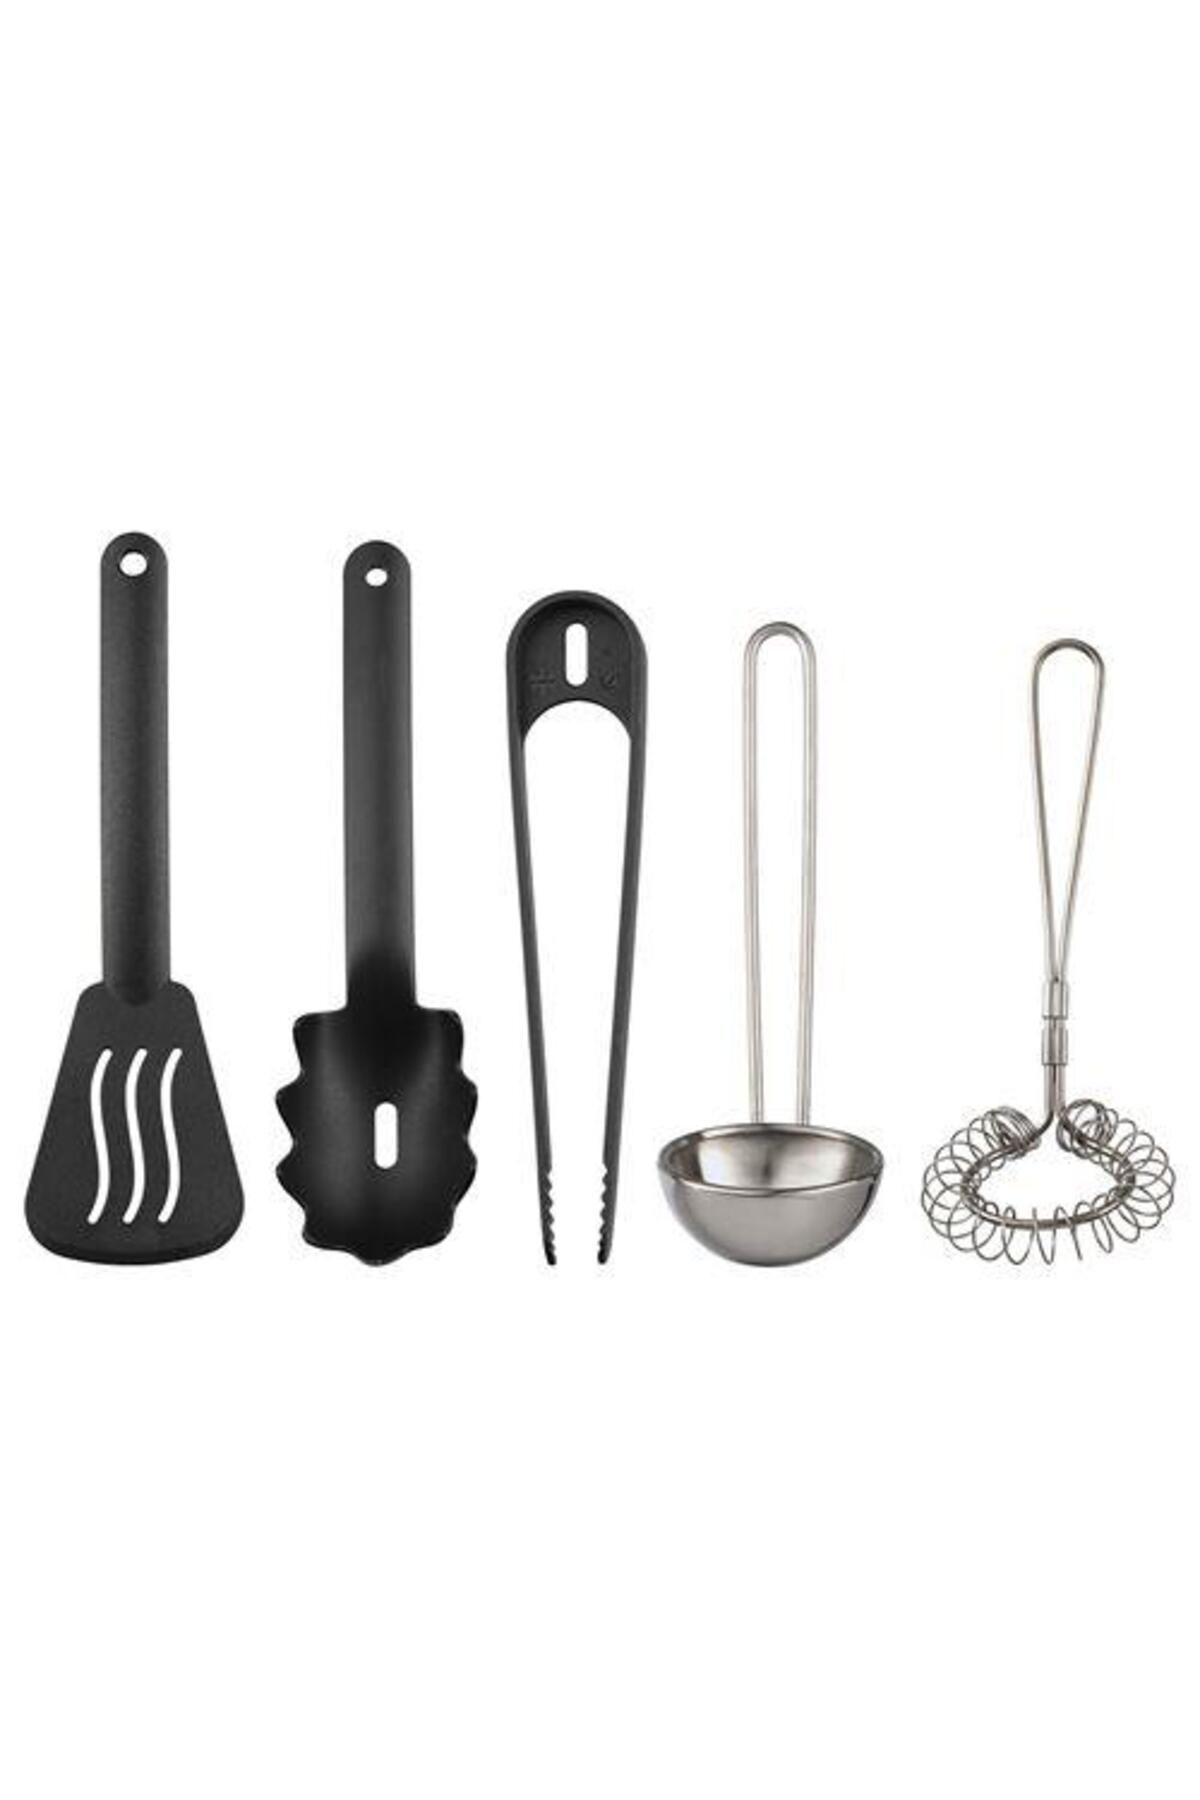 IKEA Çocuk Metal Mutfak Gereçleri Seti 5 Parça Meridyendukkan Lame Siyah Renk Minyatür Pişirme Set